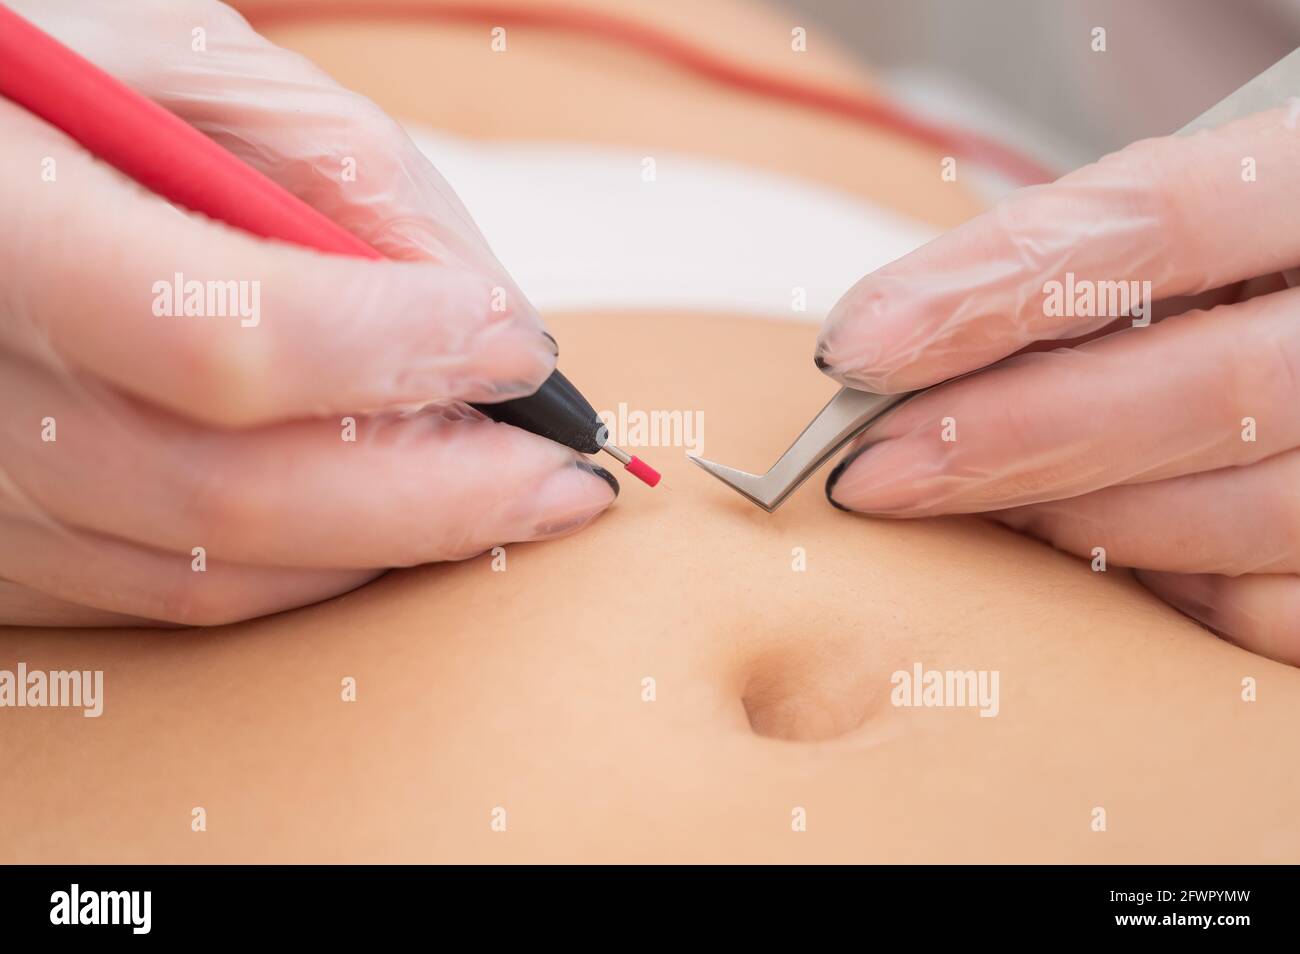 Femme en épilation électrique sur son ventre. Retrait matériel permanent  des poils abdominaux indésirables Photo Stock - Alamy